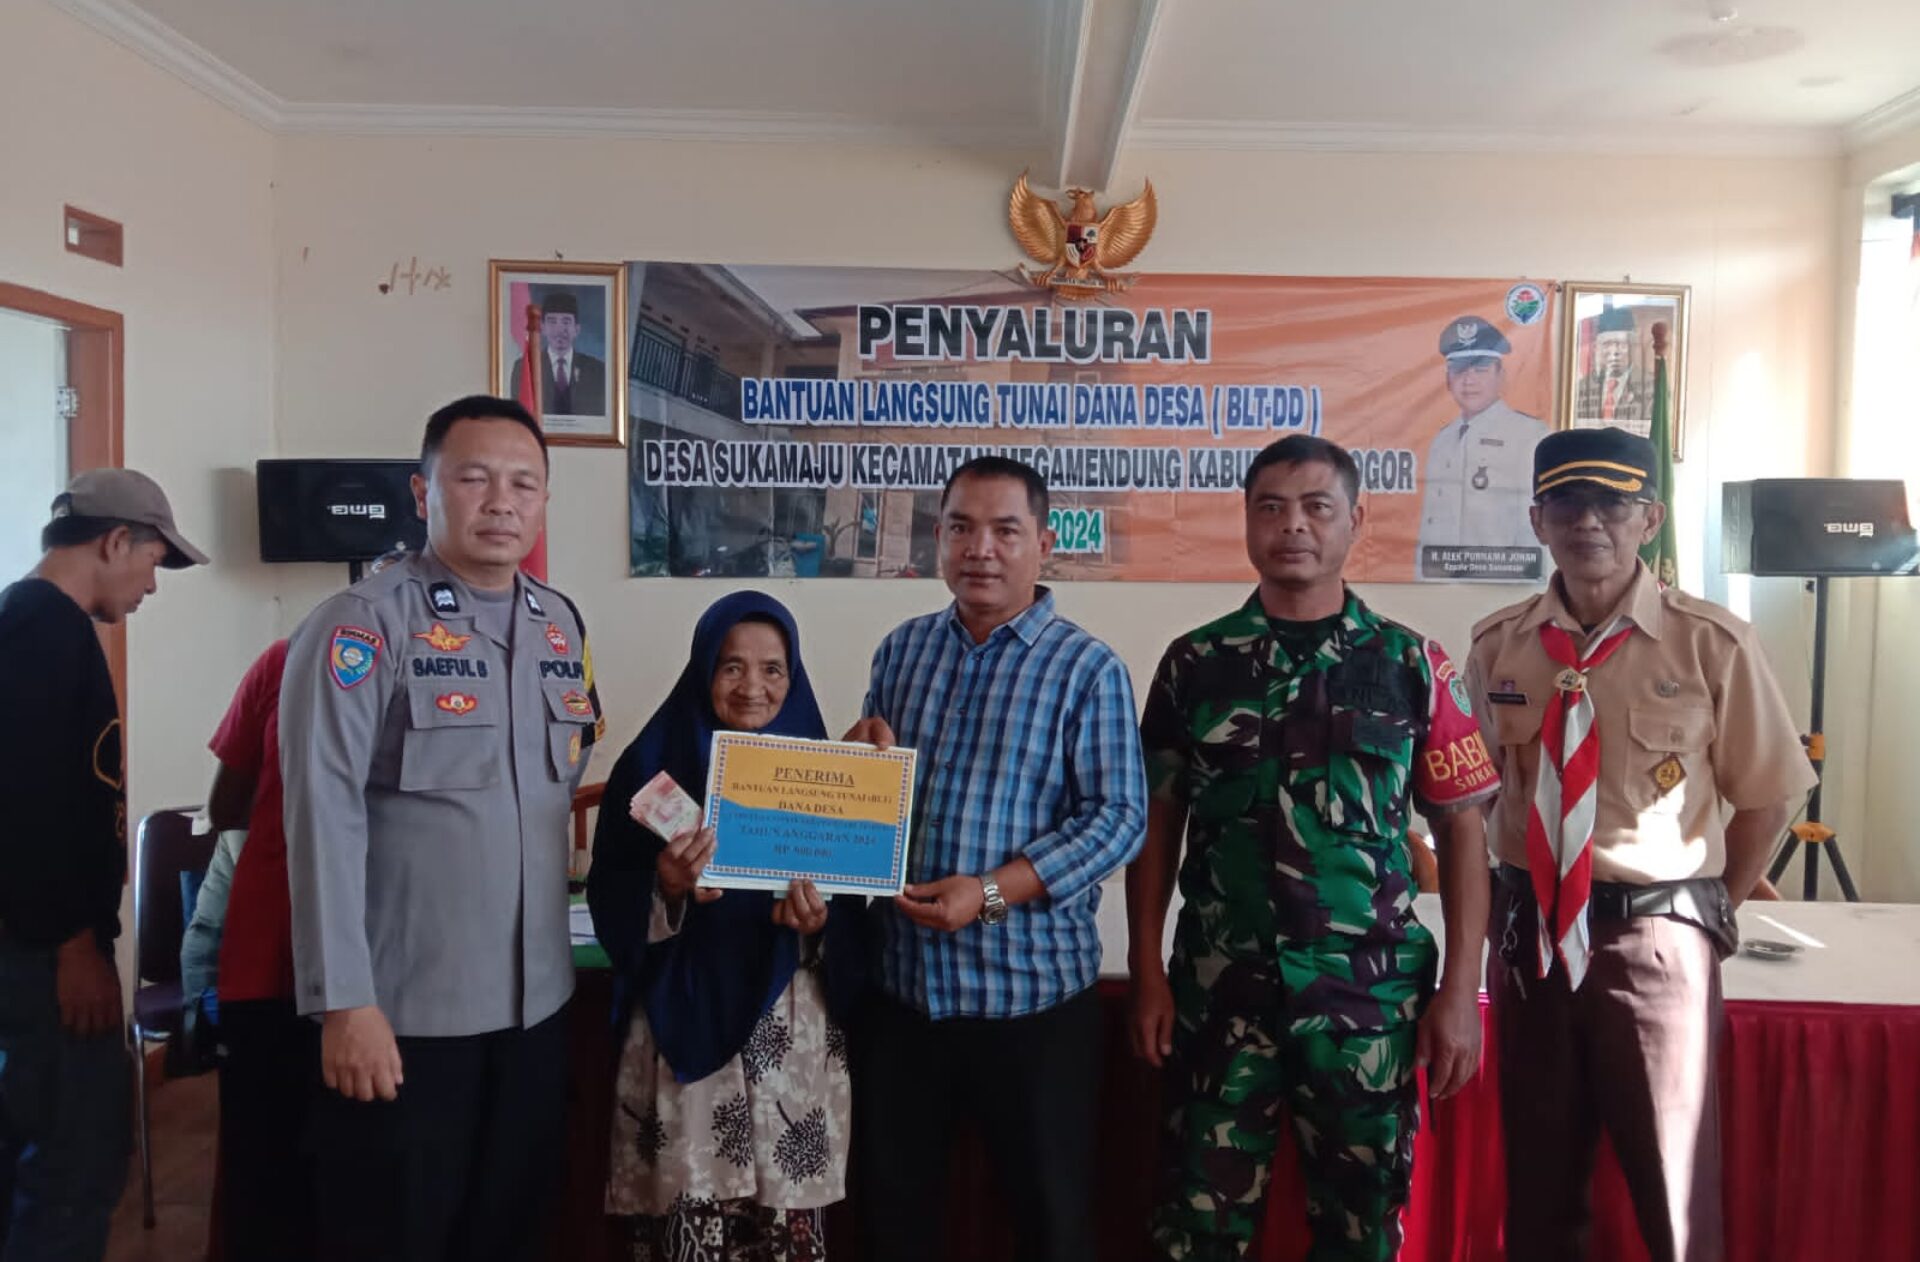 Sinergitas TNI-Polri di Bogor dalam Pemantauan Bantuan Langsung Tunai Desa Sukamaju